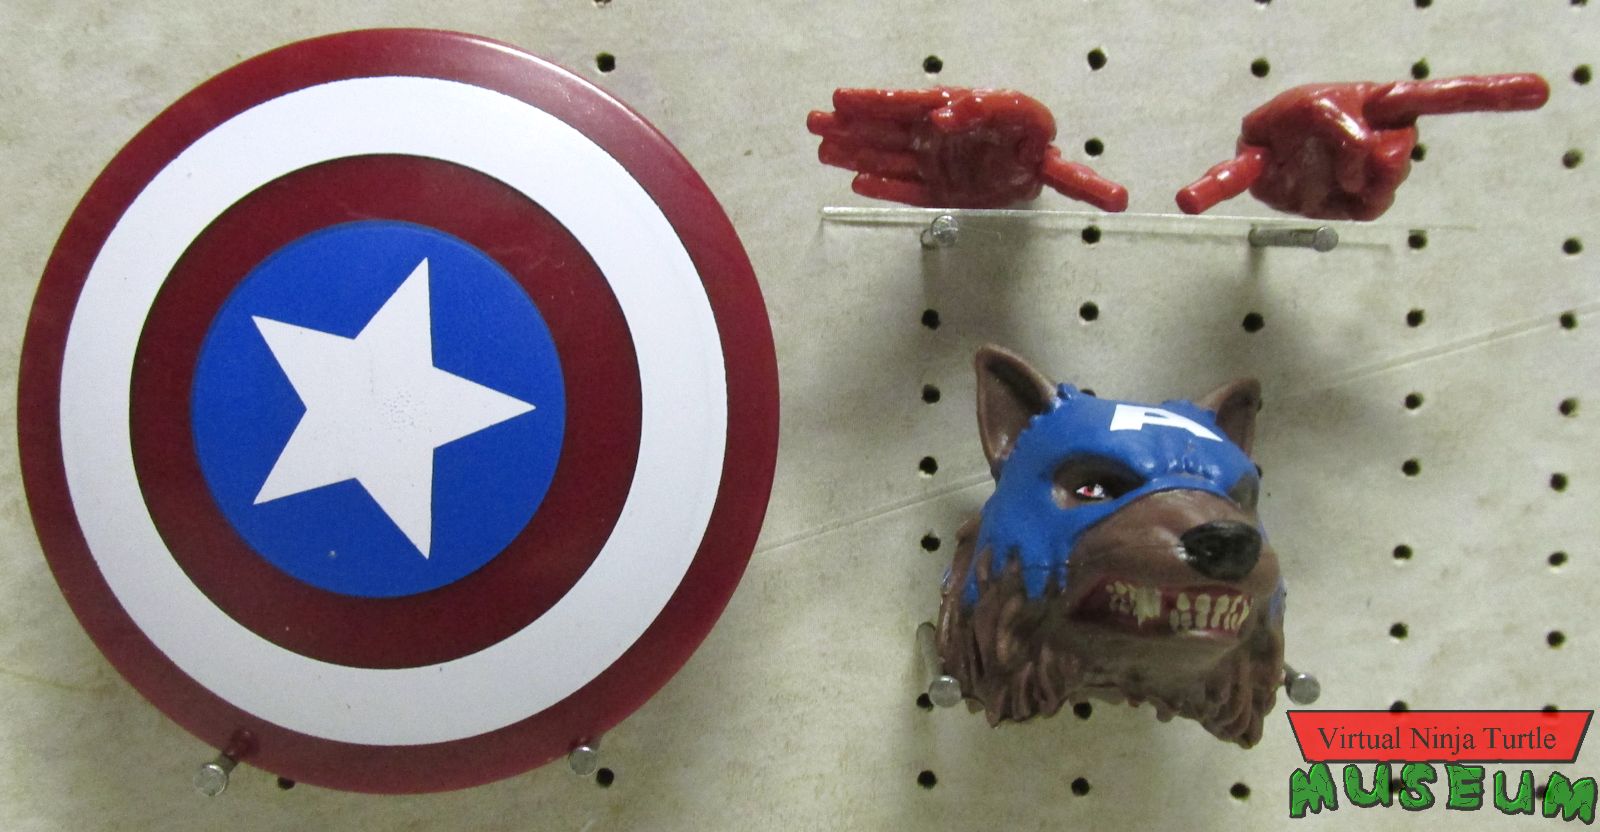 Captain America's accessories